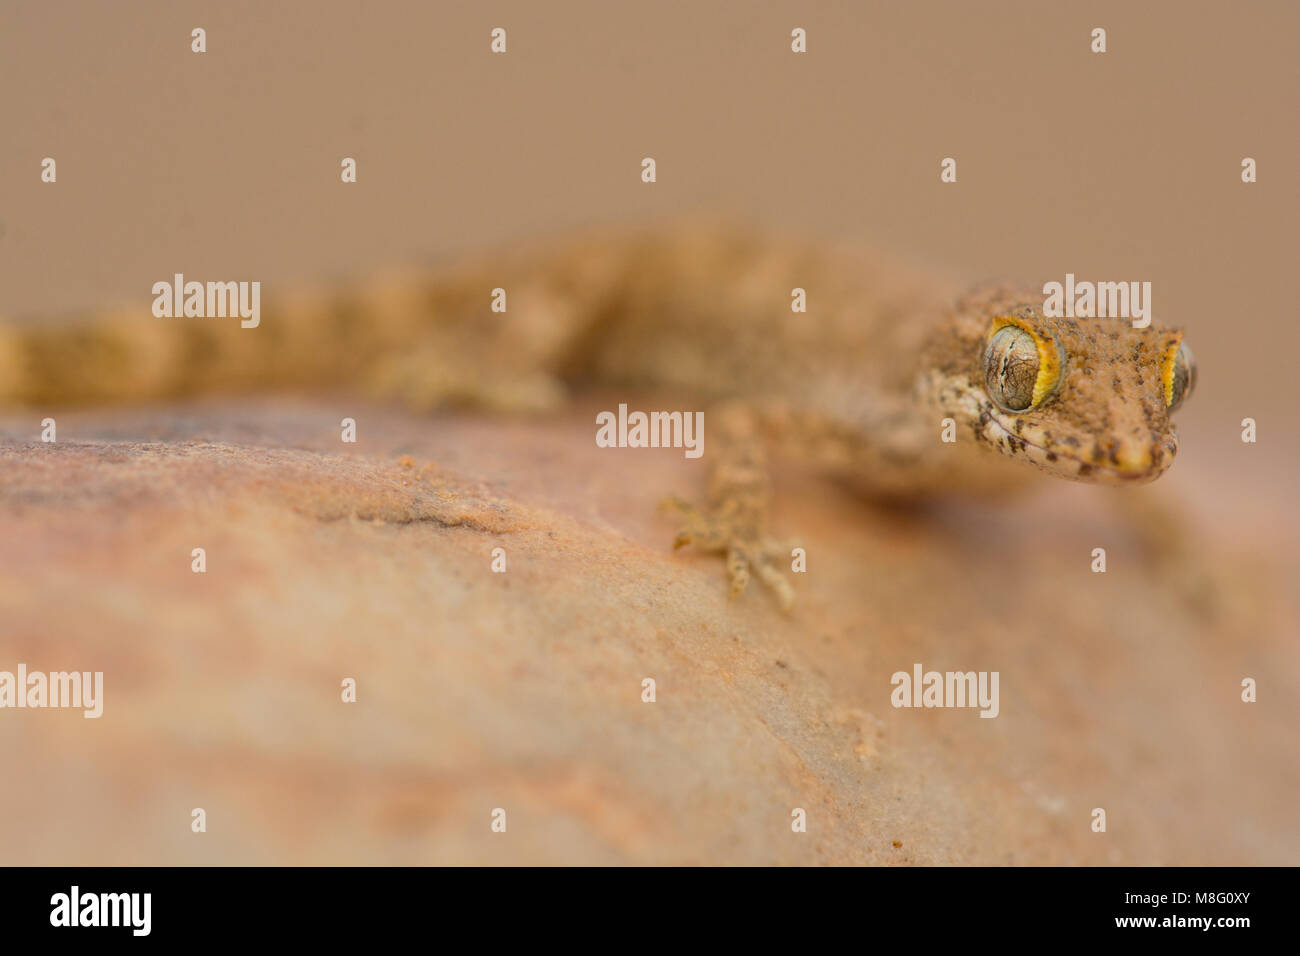 Sabbia algerino Gecko (Tropiocolotes algericus) nell ovest del deserto del Sahara in Marocco. Foto Stock